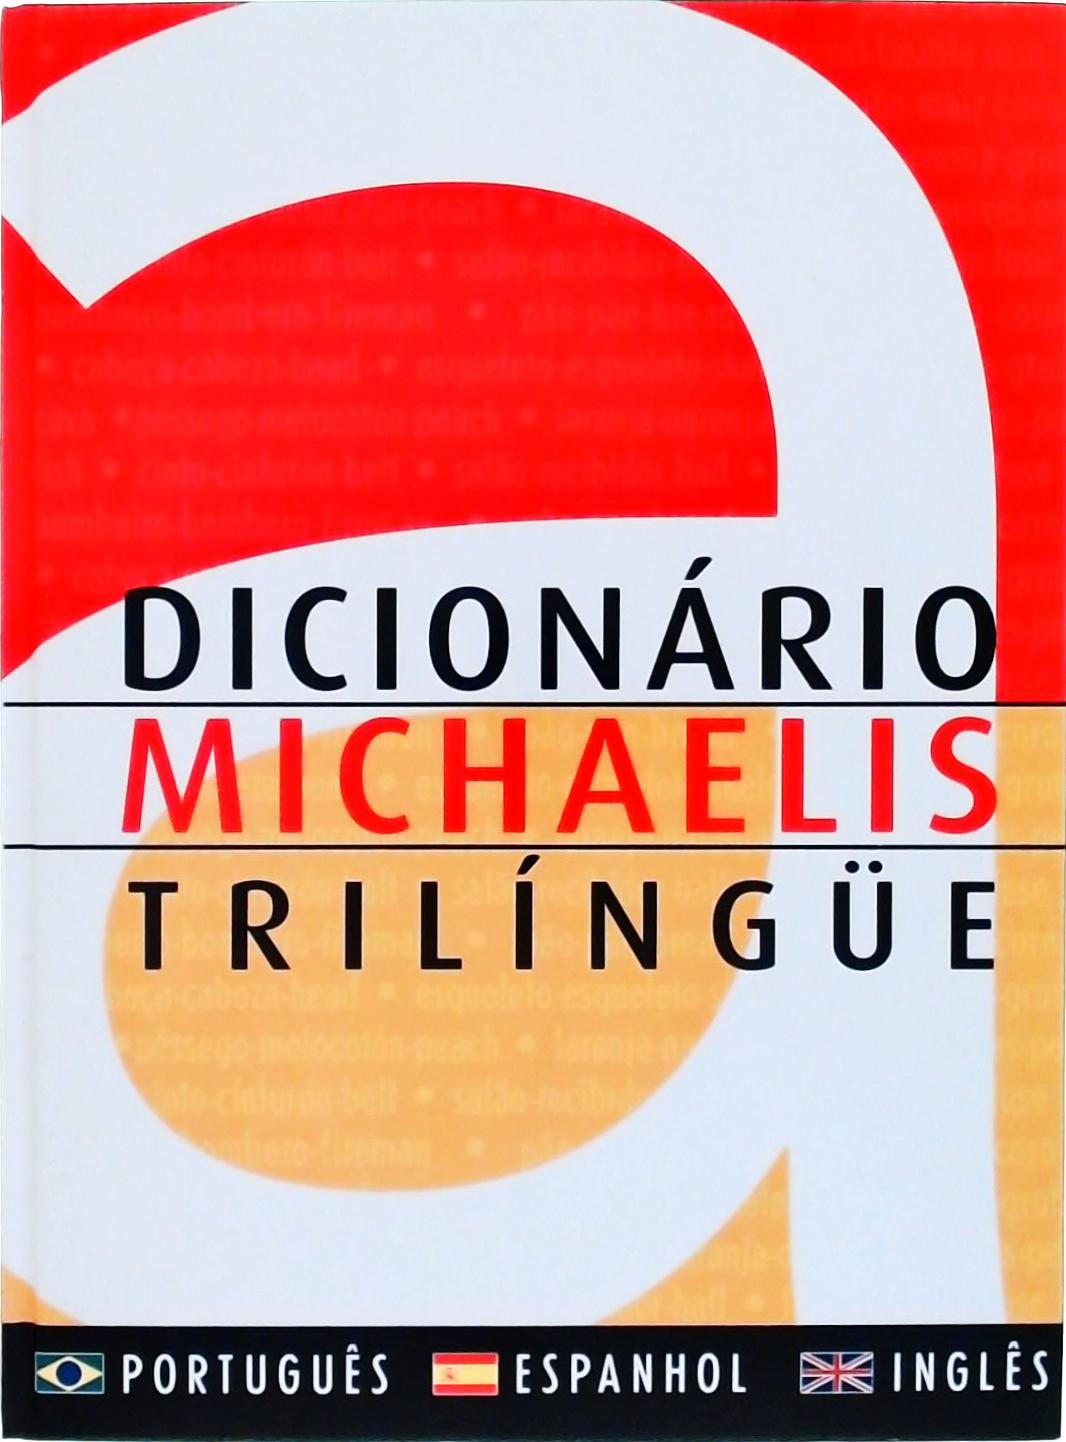 Dicionário Michaelis Trilíngue (2001)